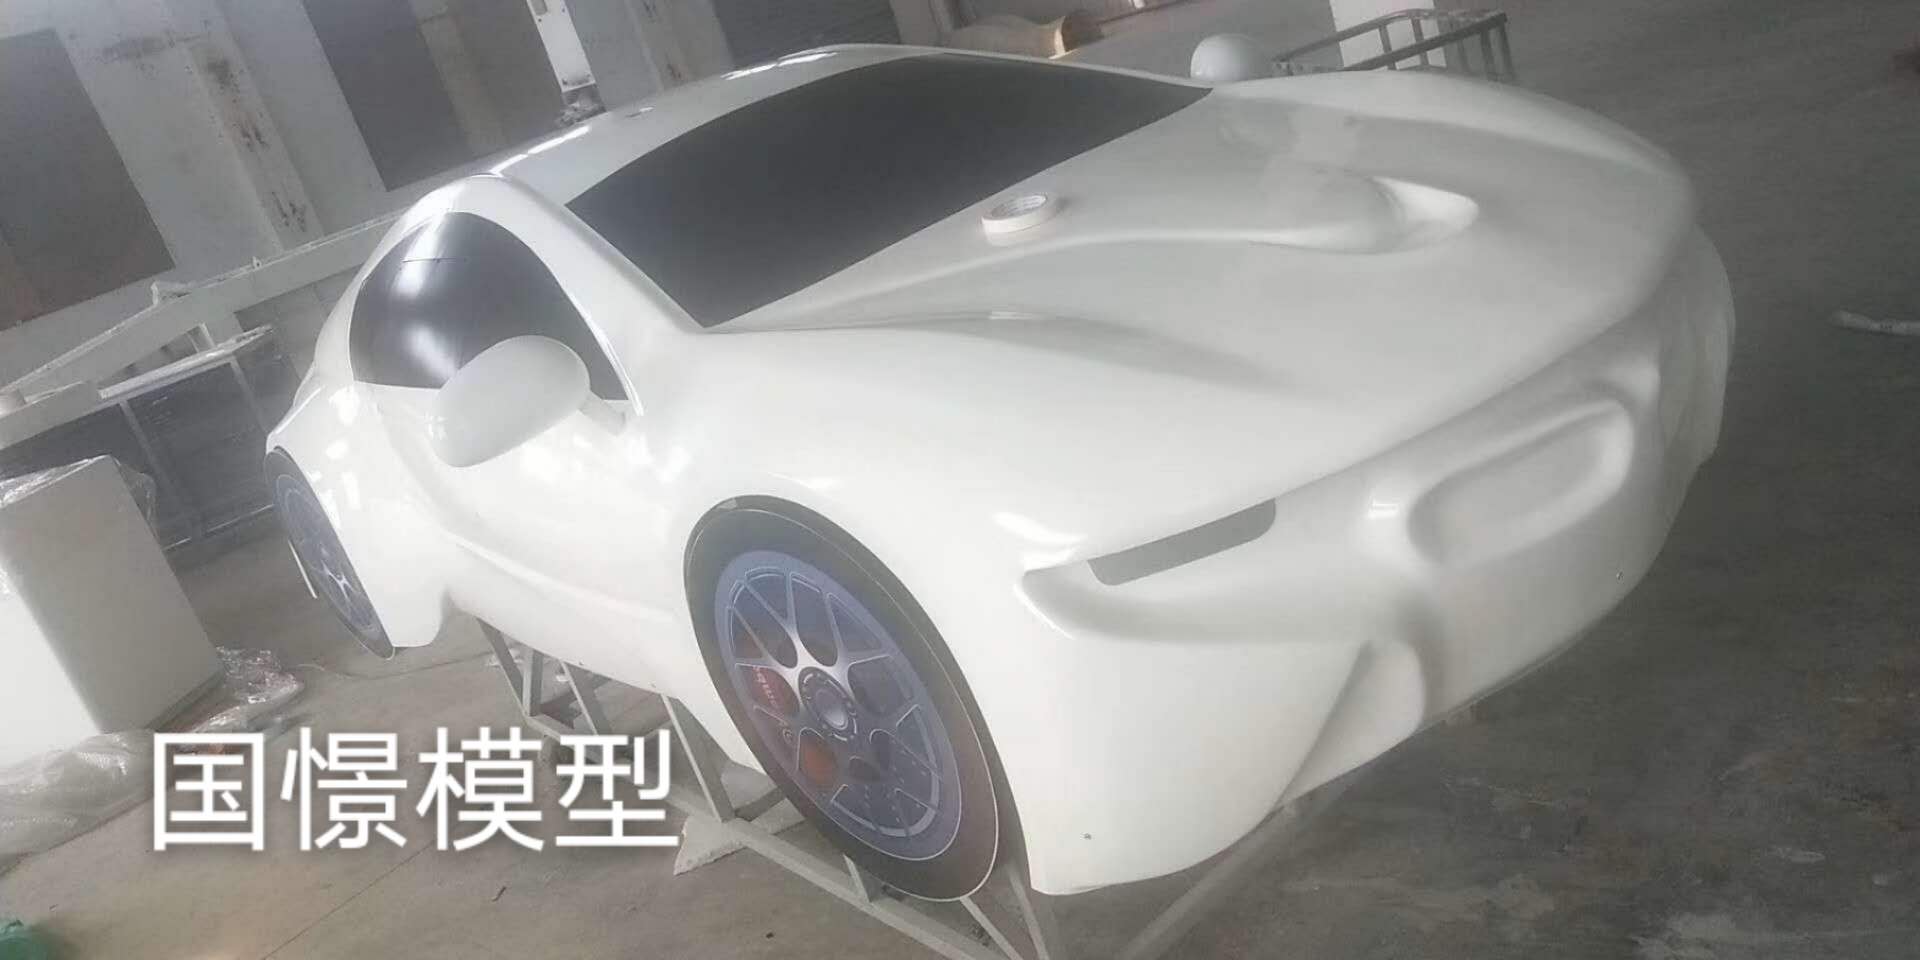 尚志市车辆模型